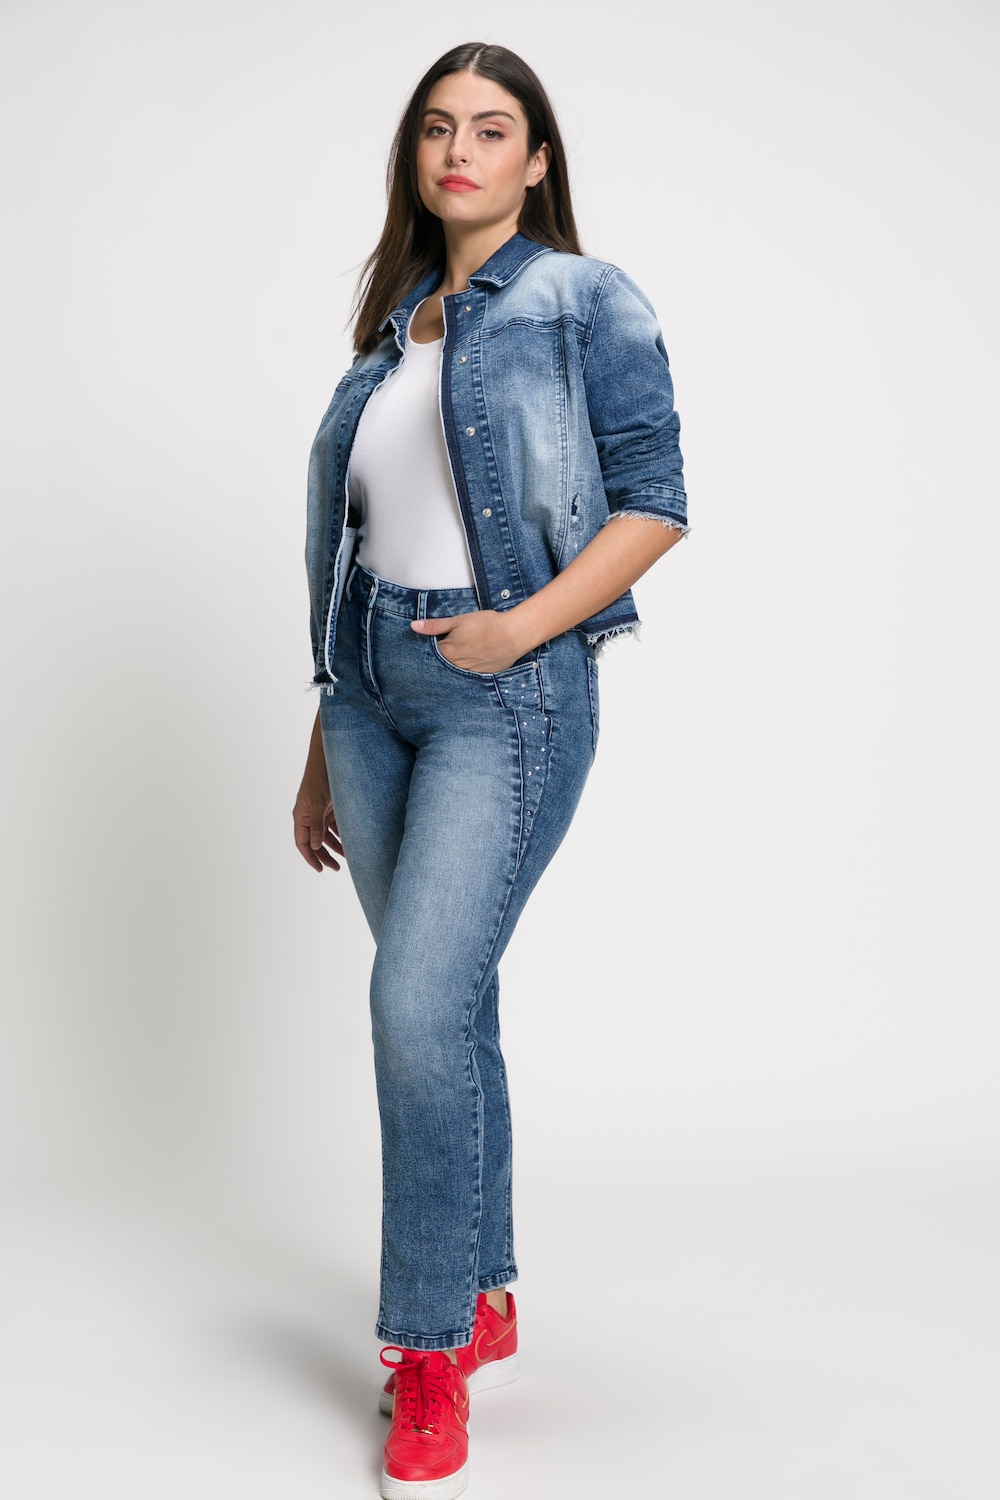 Grote Maten jeans Sarah, Dames, blauw, Maat: 54, Katoen/Polyester, Ulla Popken